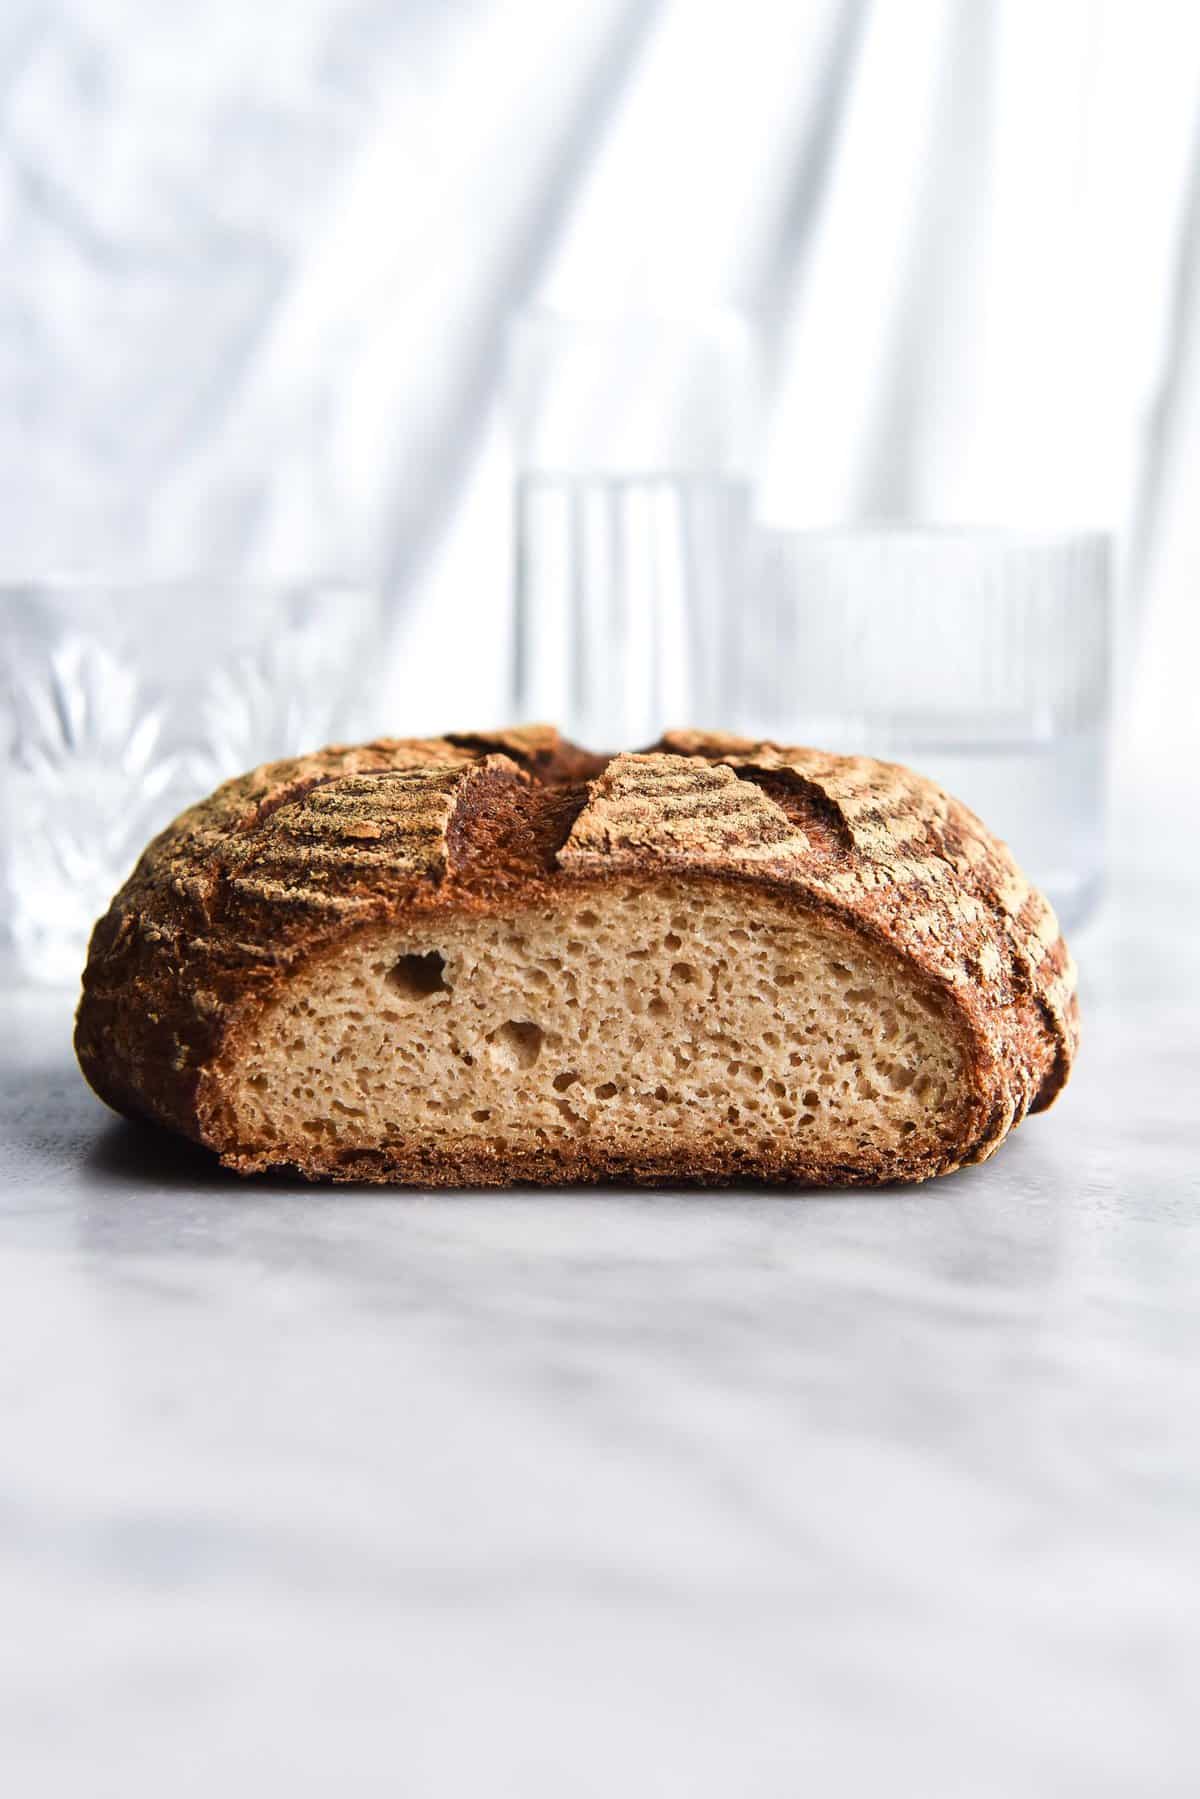 Gluten free sourdough bread recipe (vegan, FODMAP friendly) from www.georgeats.com | @georgeats